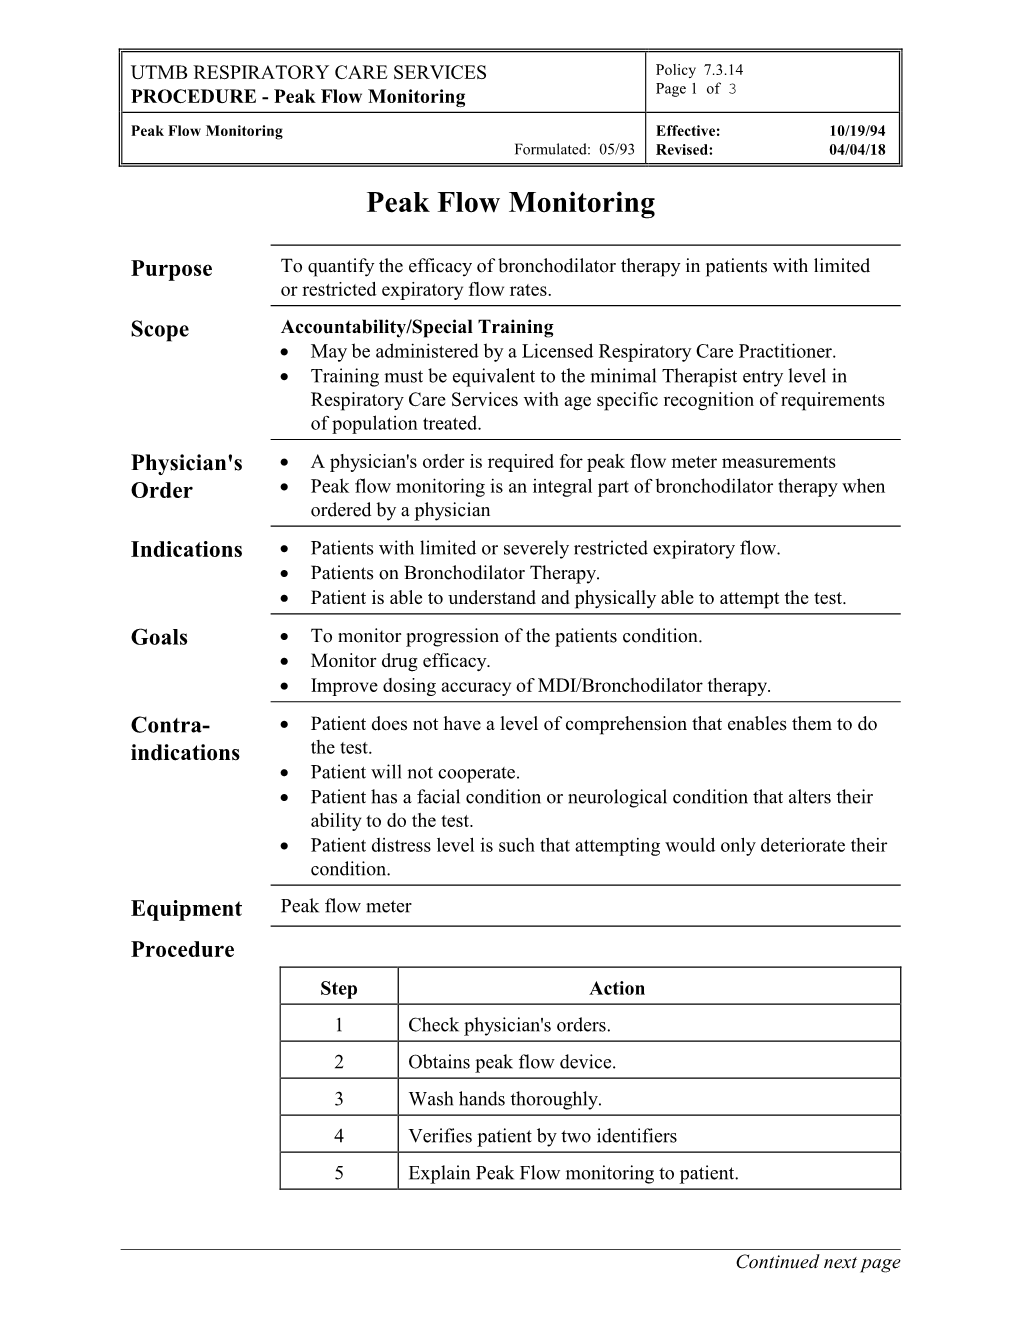 Peak Flow Monitoring Page 1 of 3